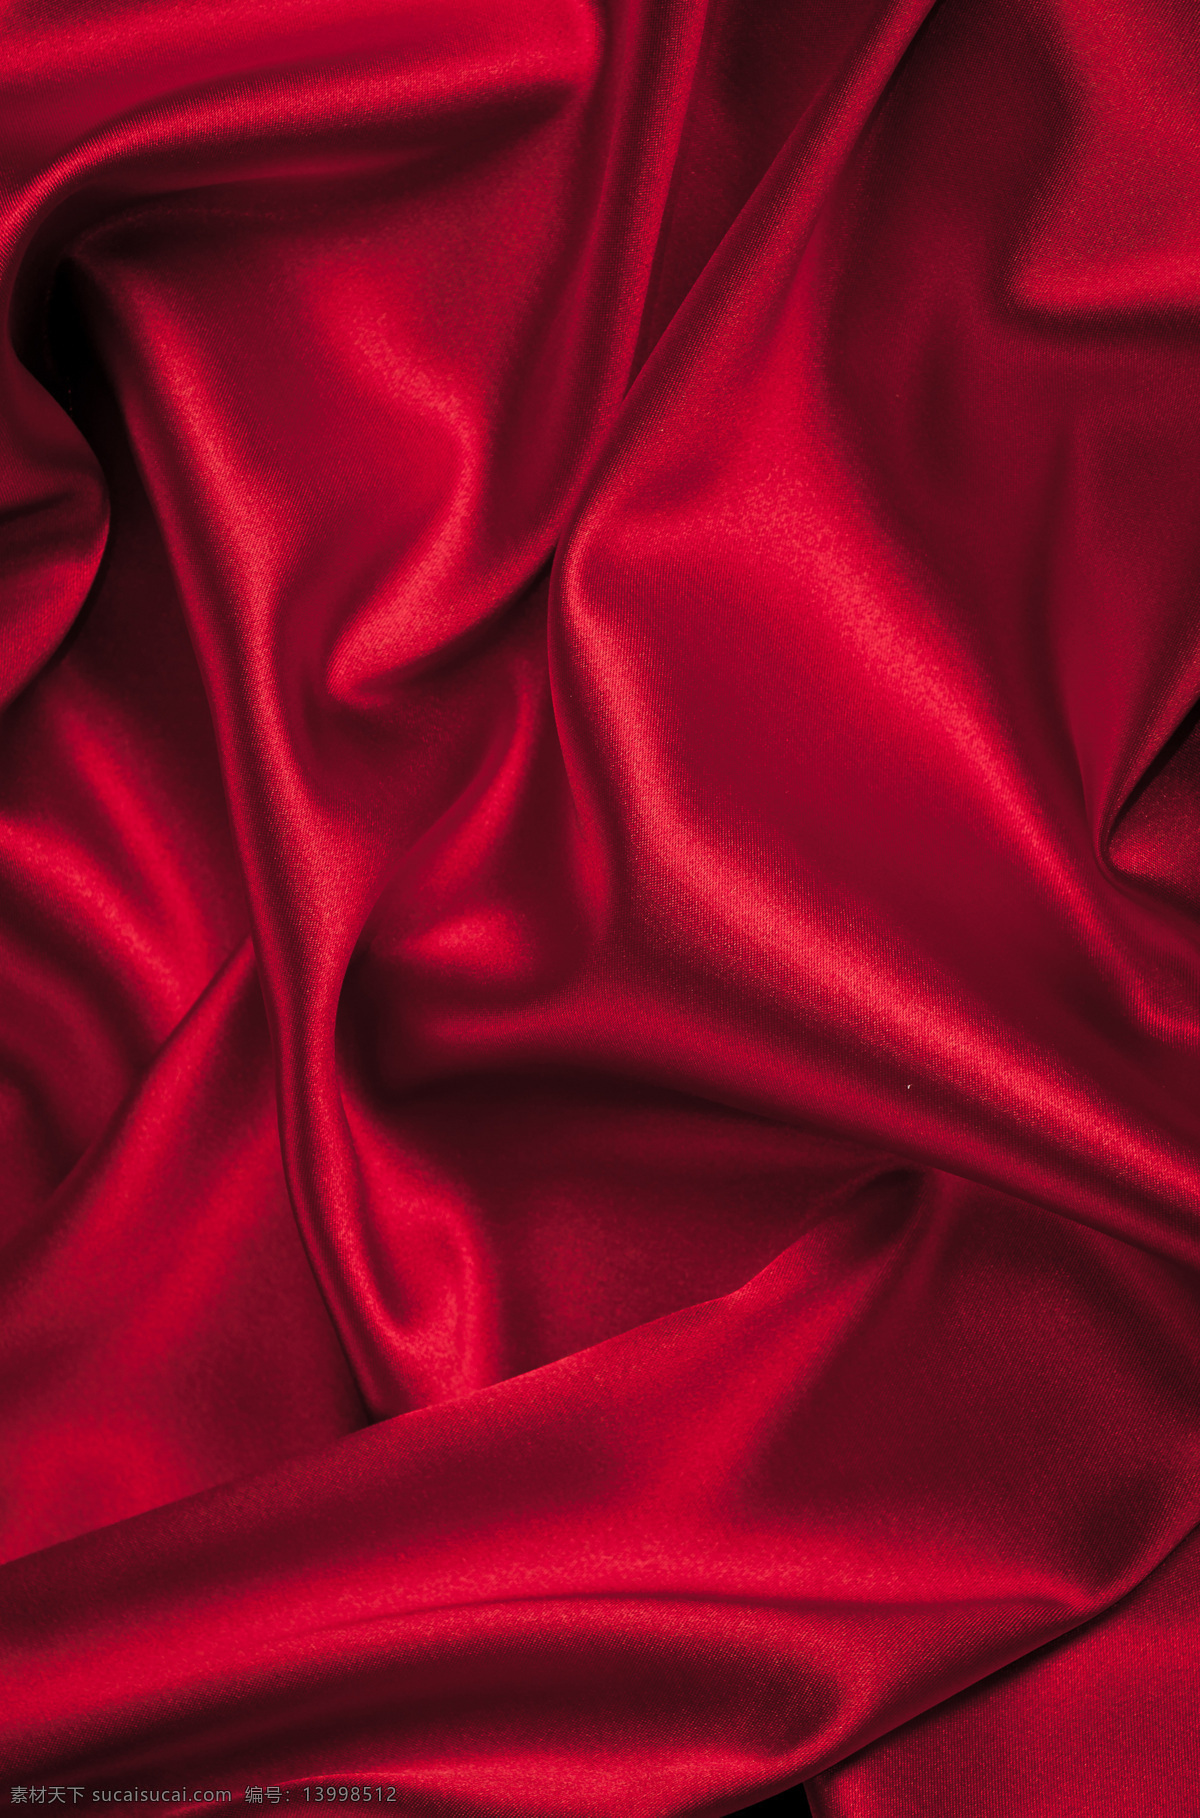 丝绸 红色丝绸背景 褶皱 优美线条 高贵典雅 珠宝服饰 生活百科